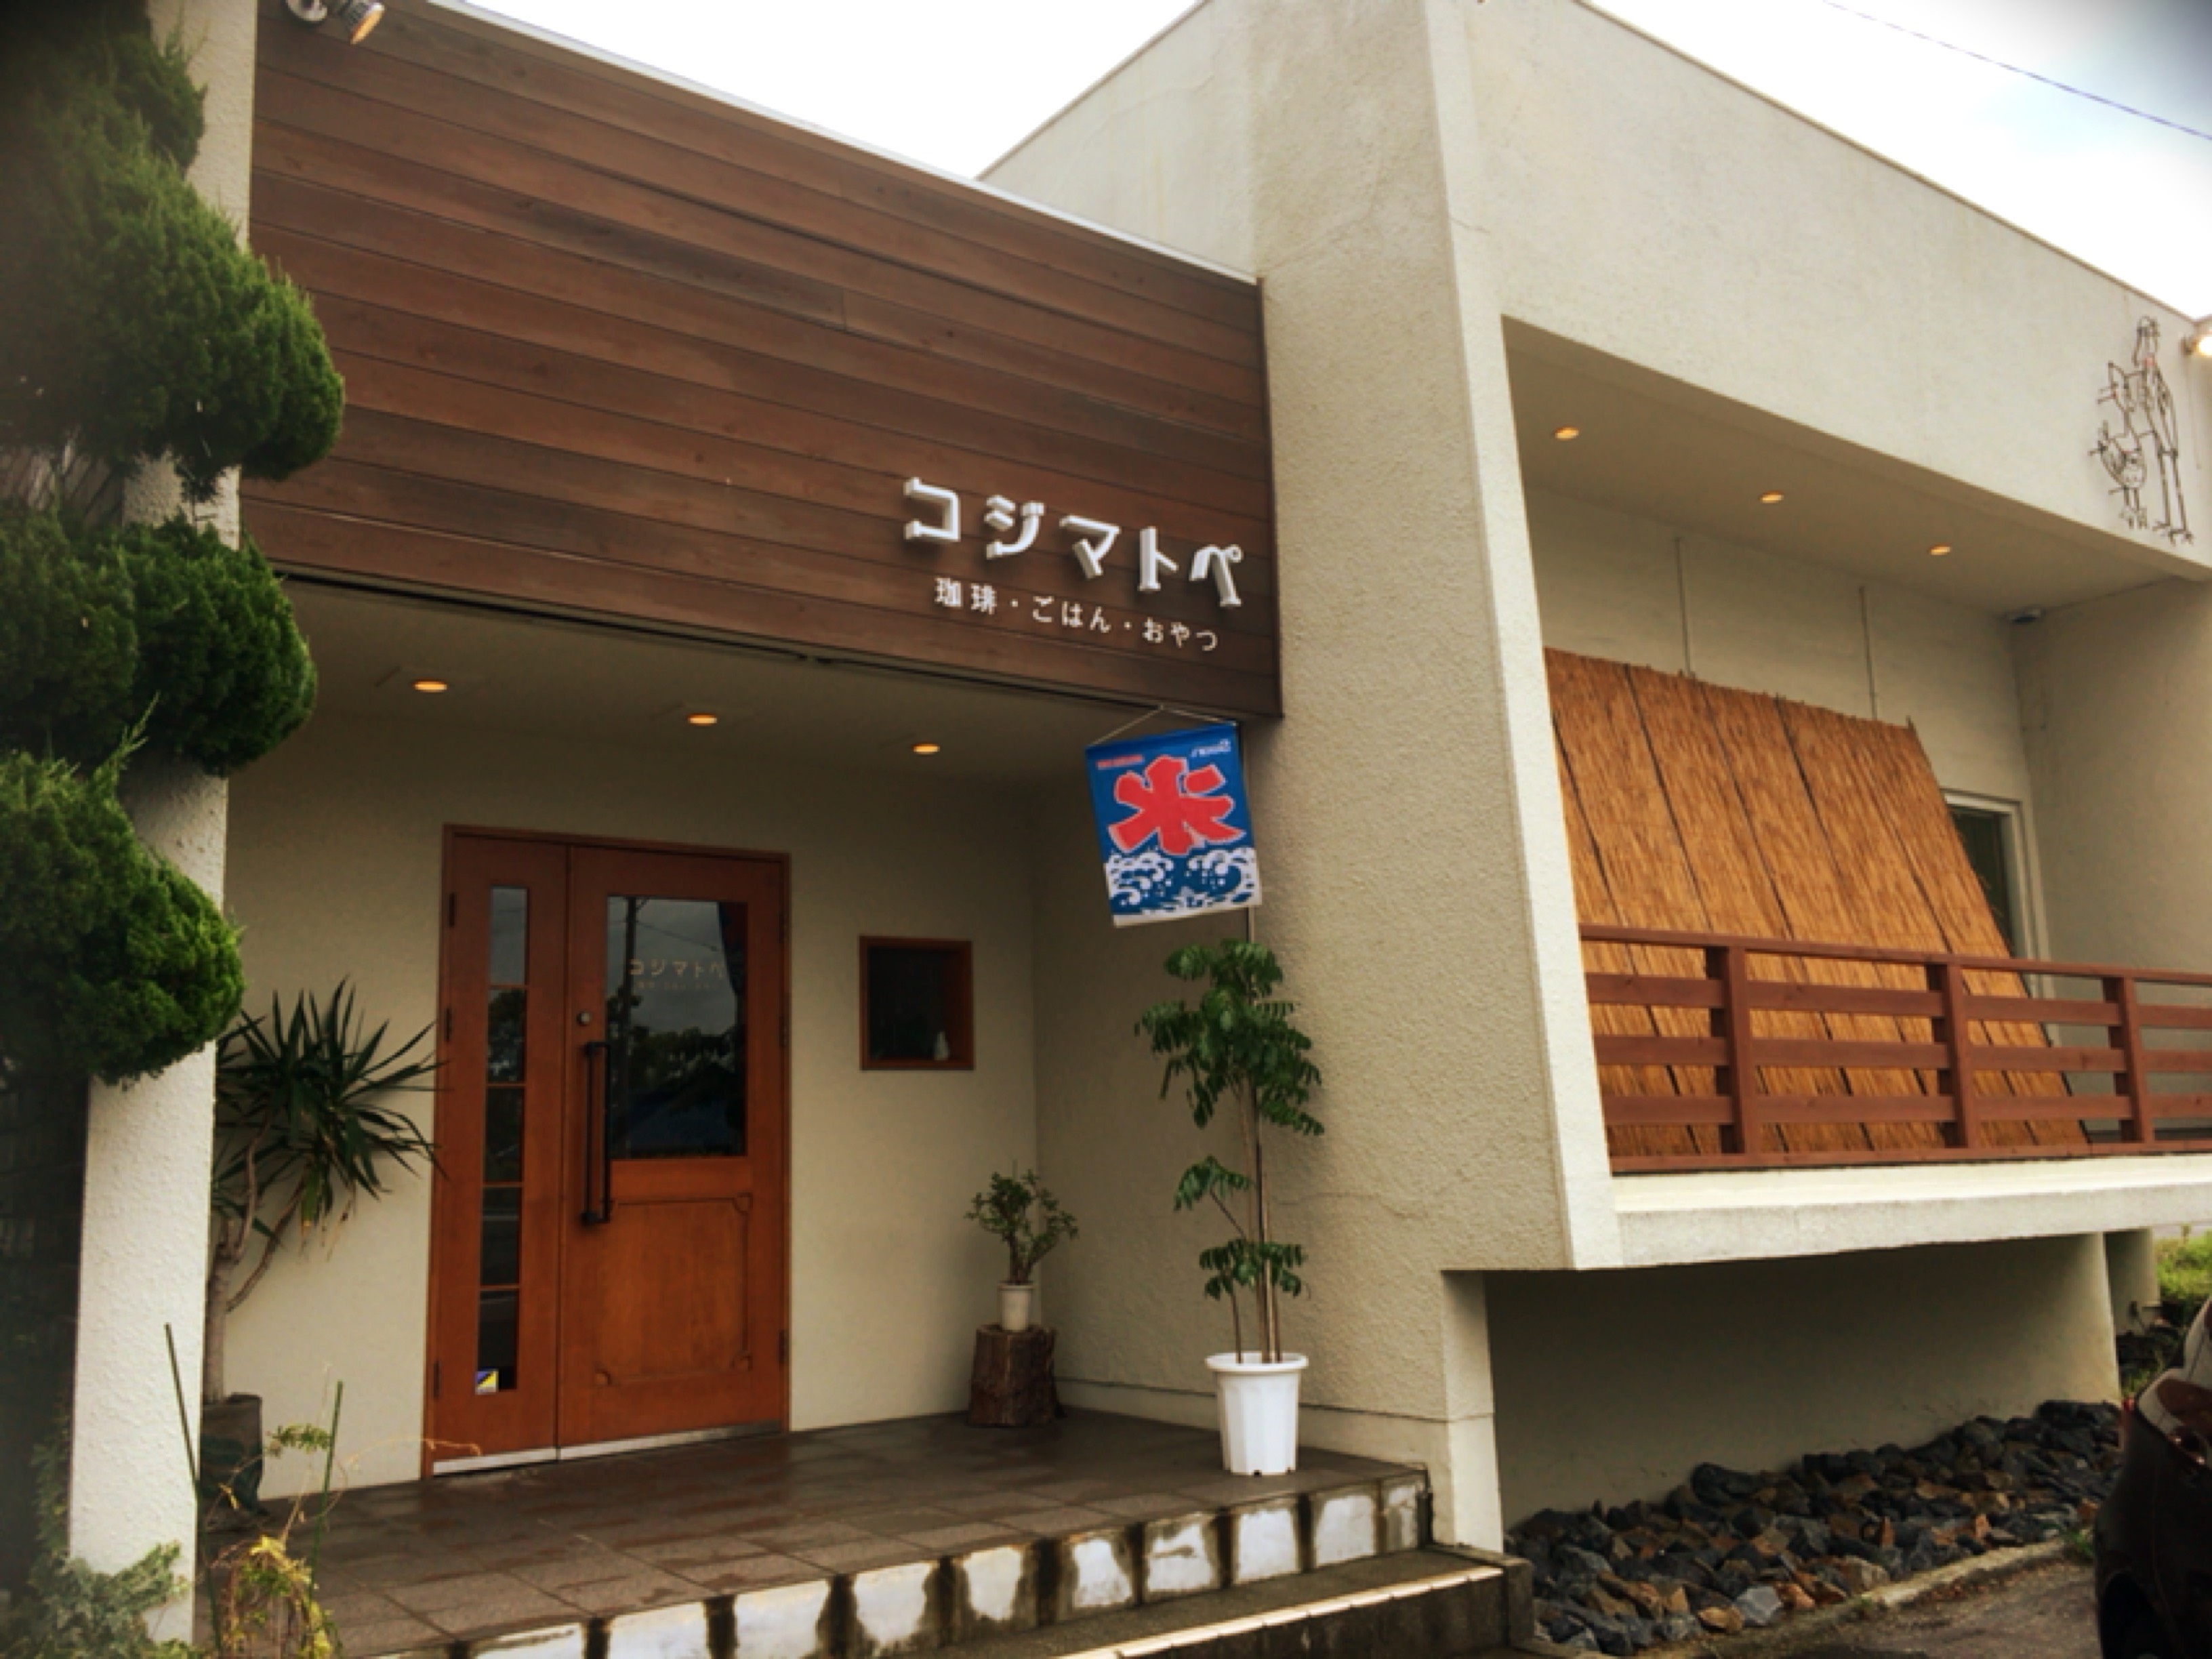 岡崎のコジマトペ オムライスがうまい おしゃれな店内でインスタ映えするカフェです 岡崎にゅーす